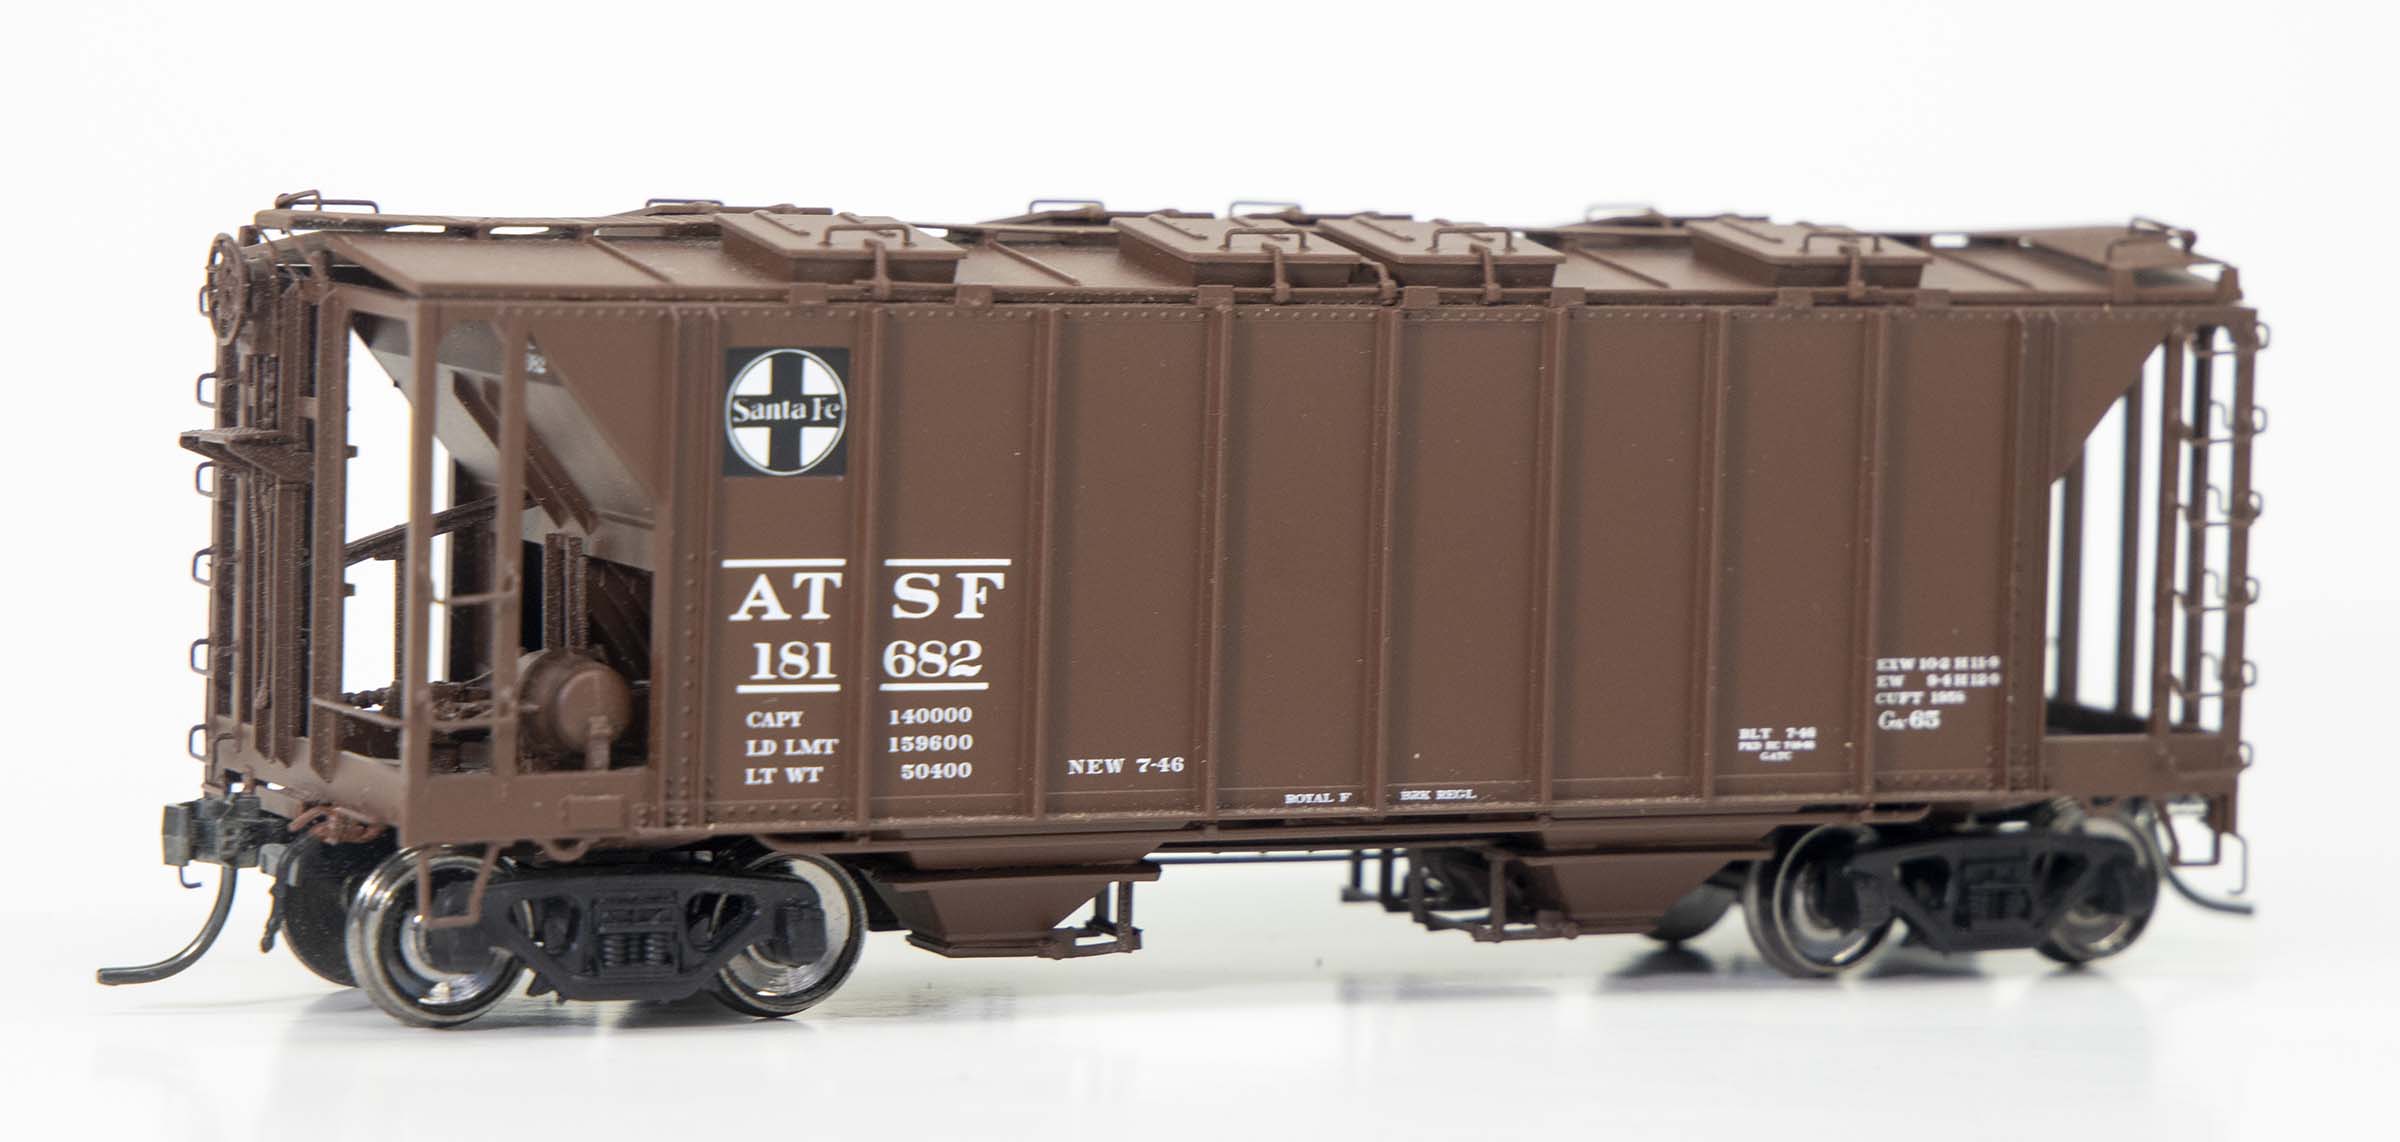 ATSF Ga-65 #181682 (model)